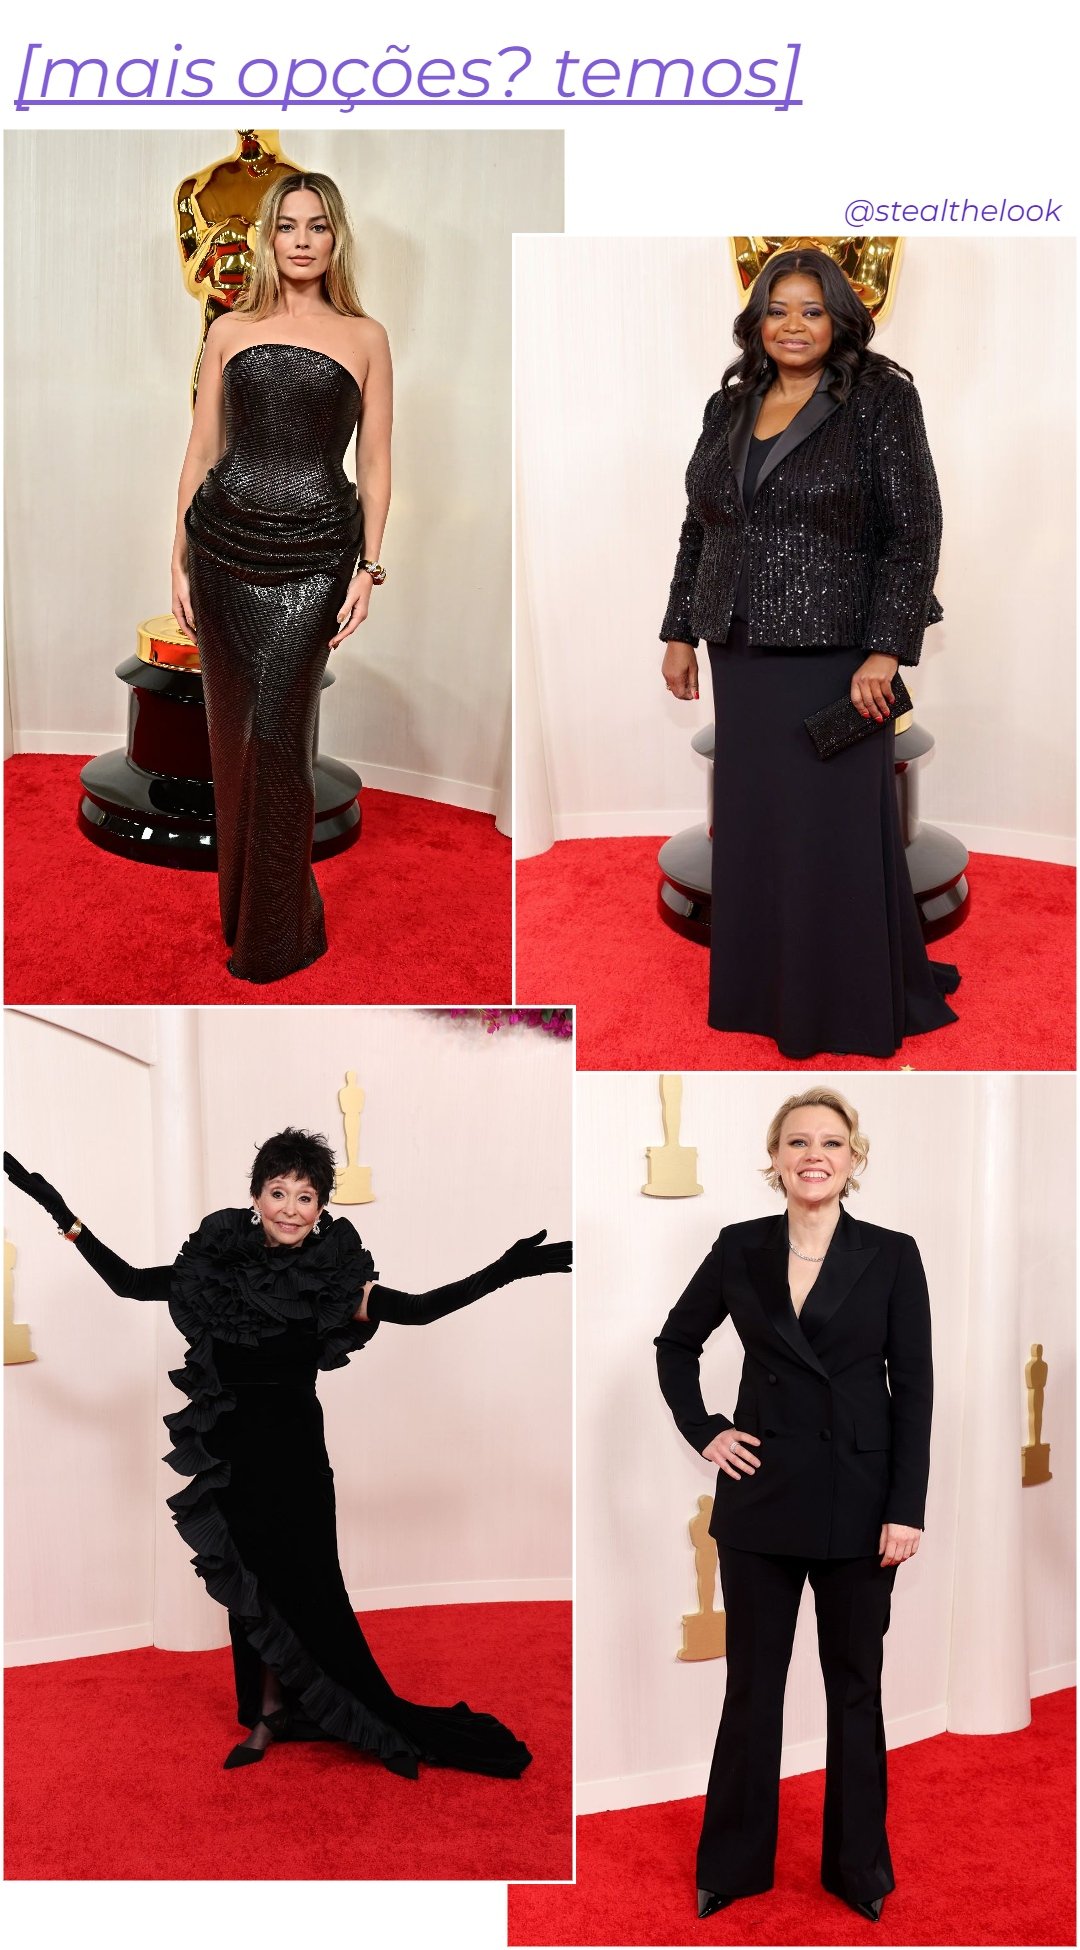 Margot Robbie, Octavia Spencer, Rita Moreno e Kate McKinnon - roupas diversas pretas - Vestido preto - inverno - colagem de imagens - https://stealthelook.com.br